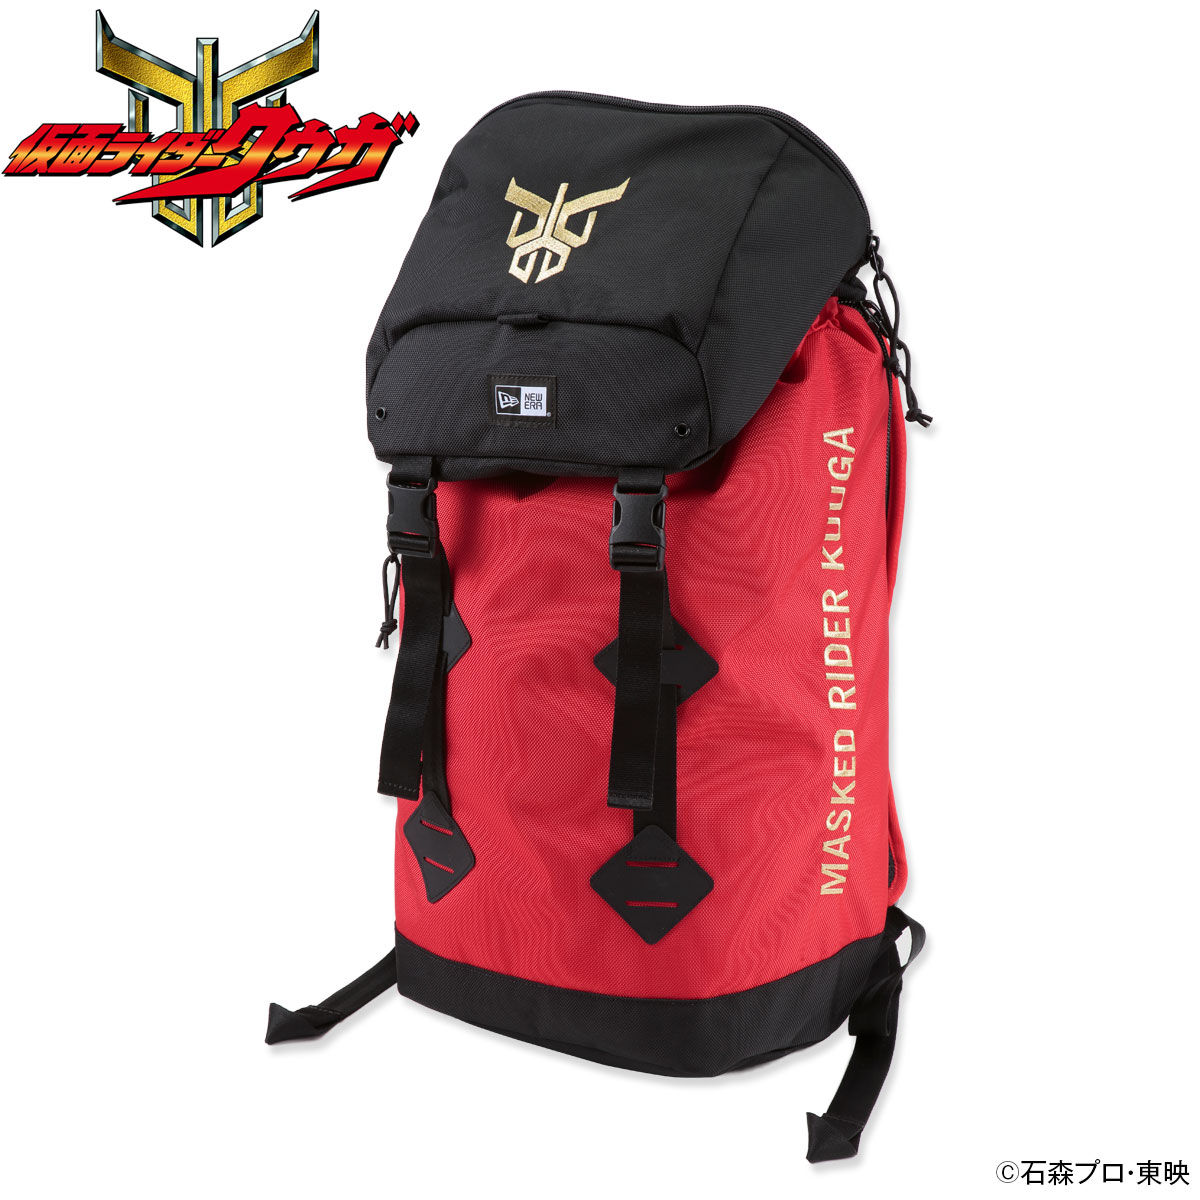 Backpack—Kamen Rider Kuuga/New Era Collaboration